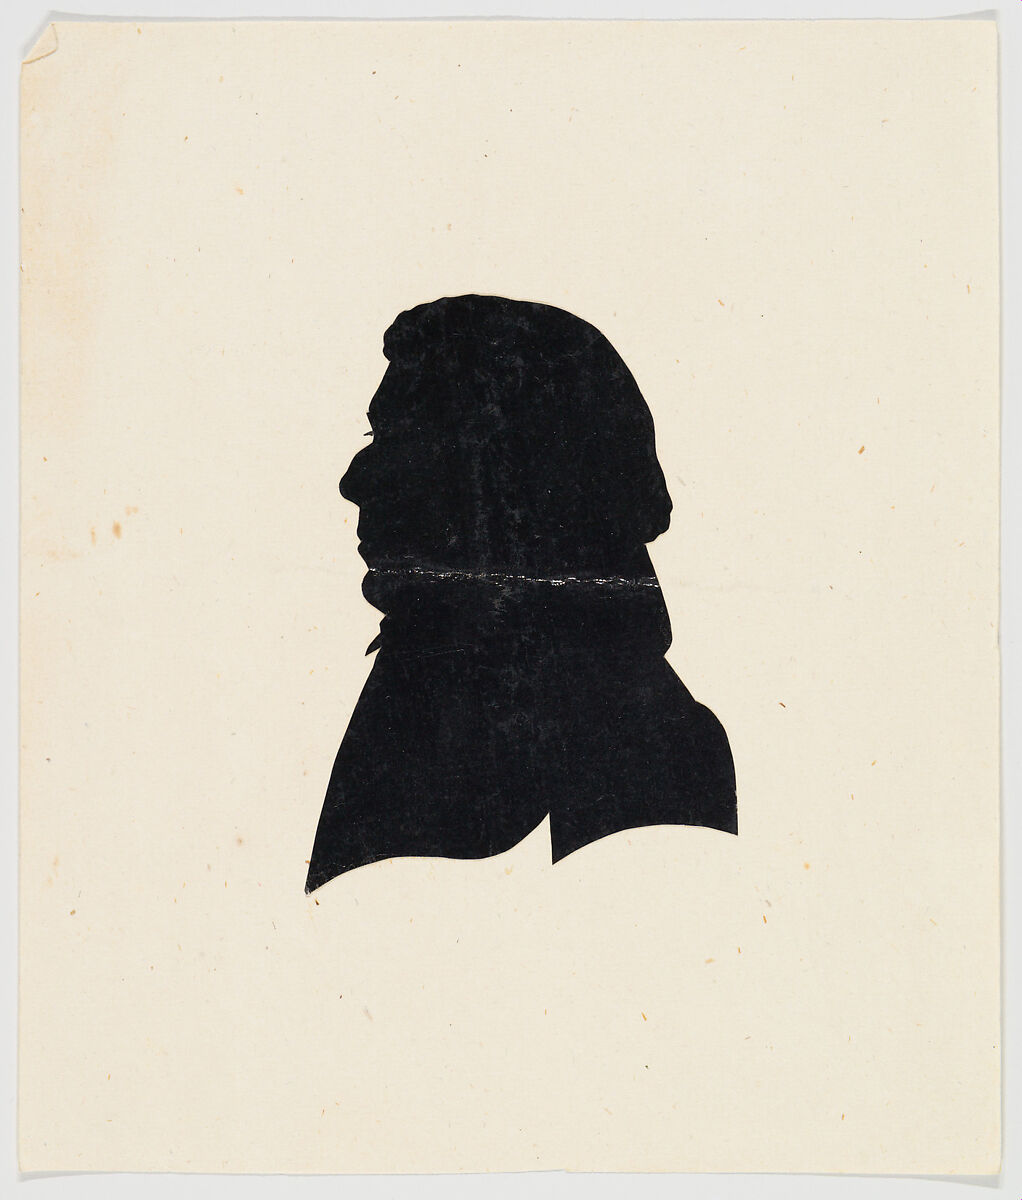 Unidentified profile portrait, older man facing left, Anonymous, German, Cut black paper silhouette 